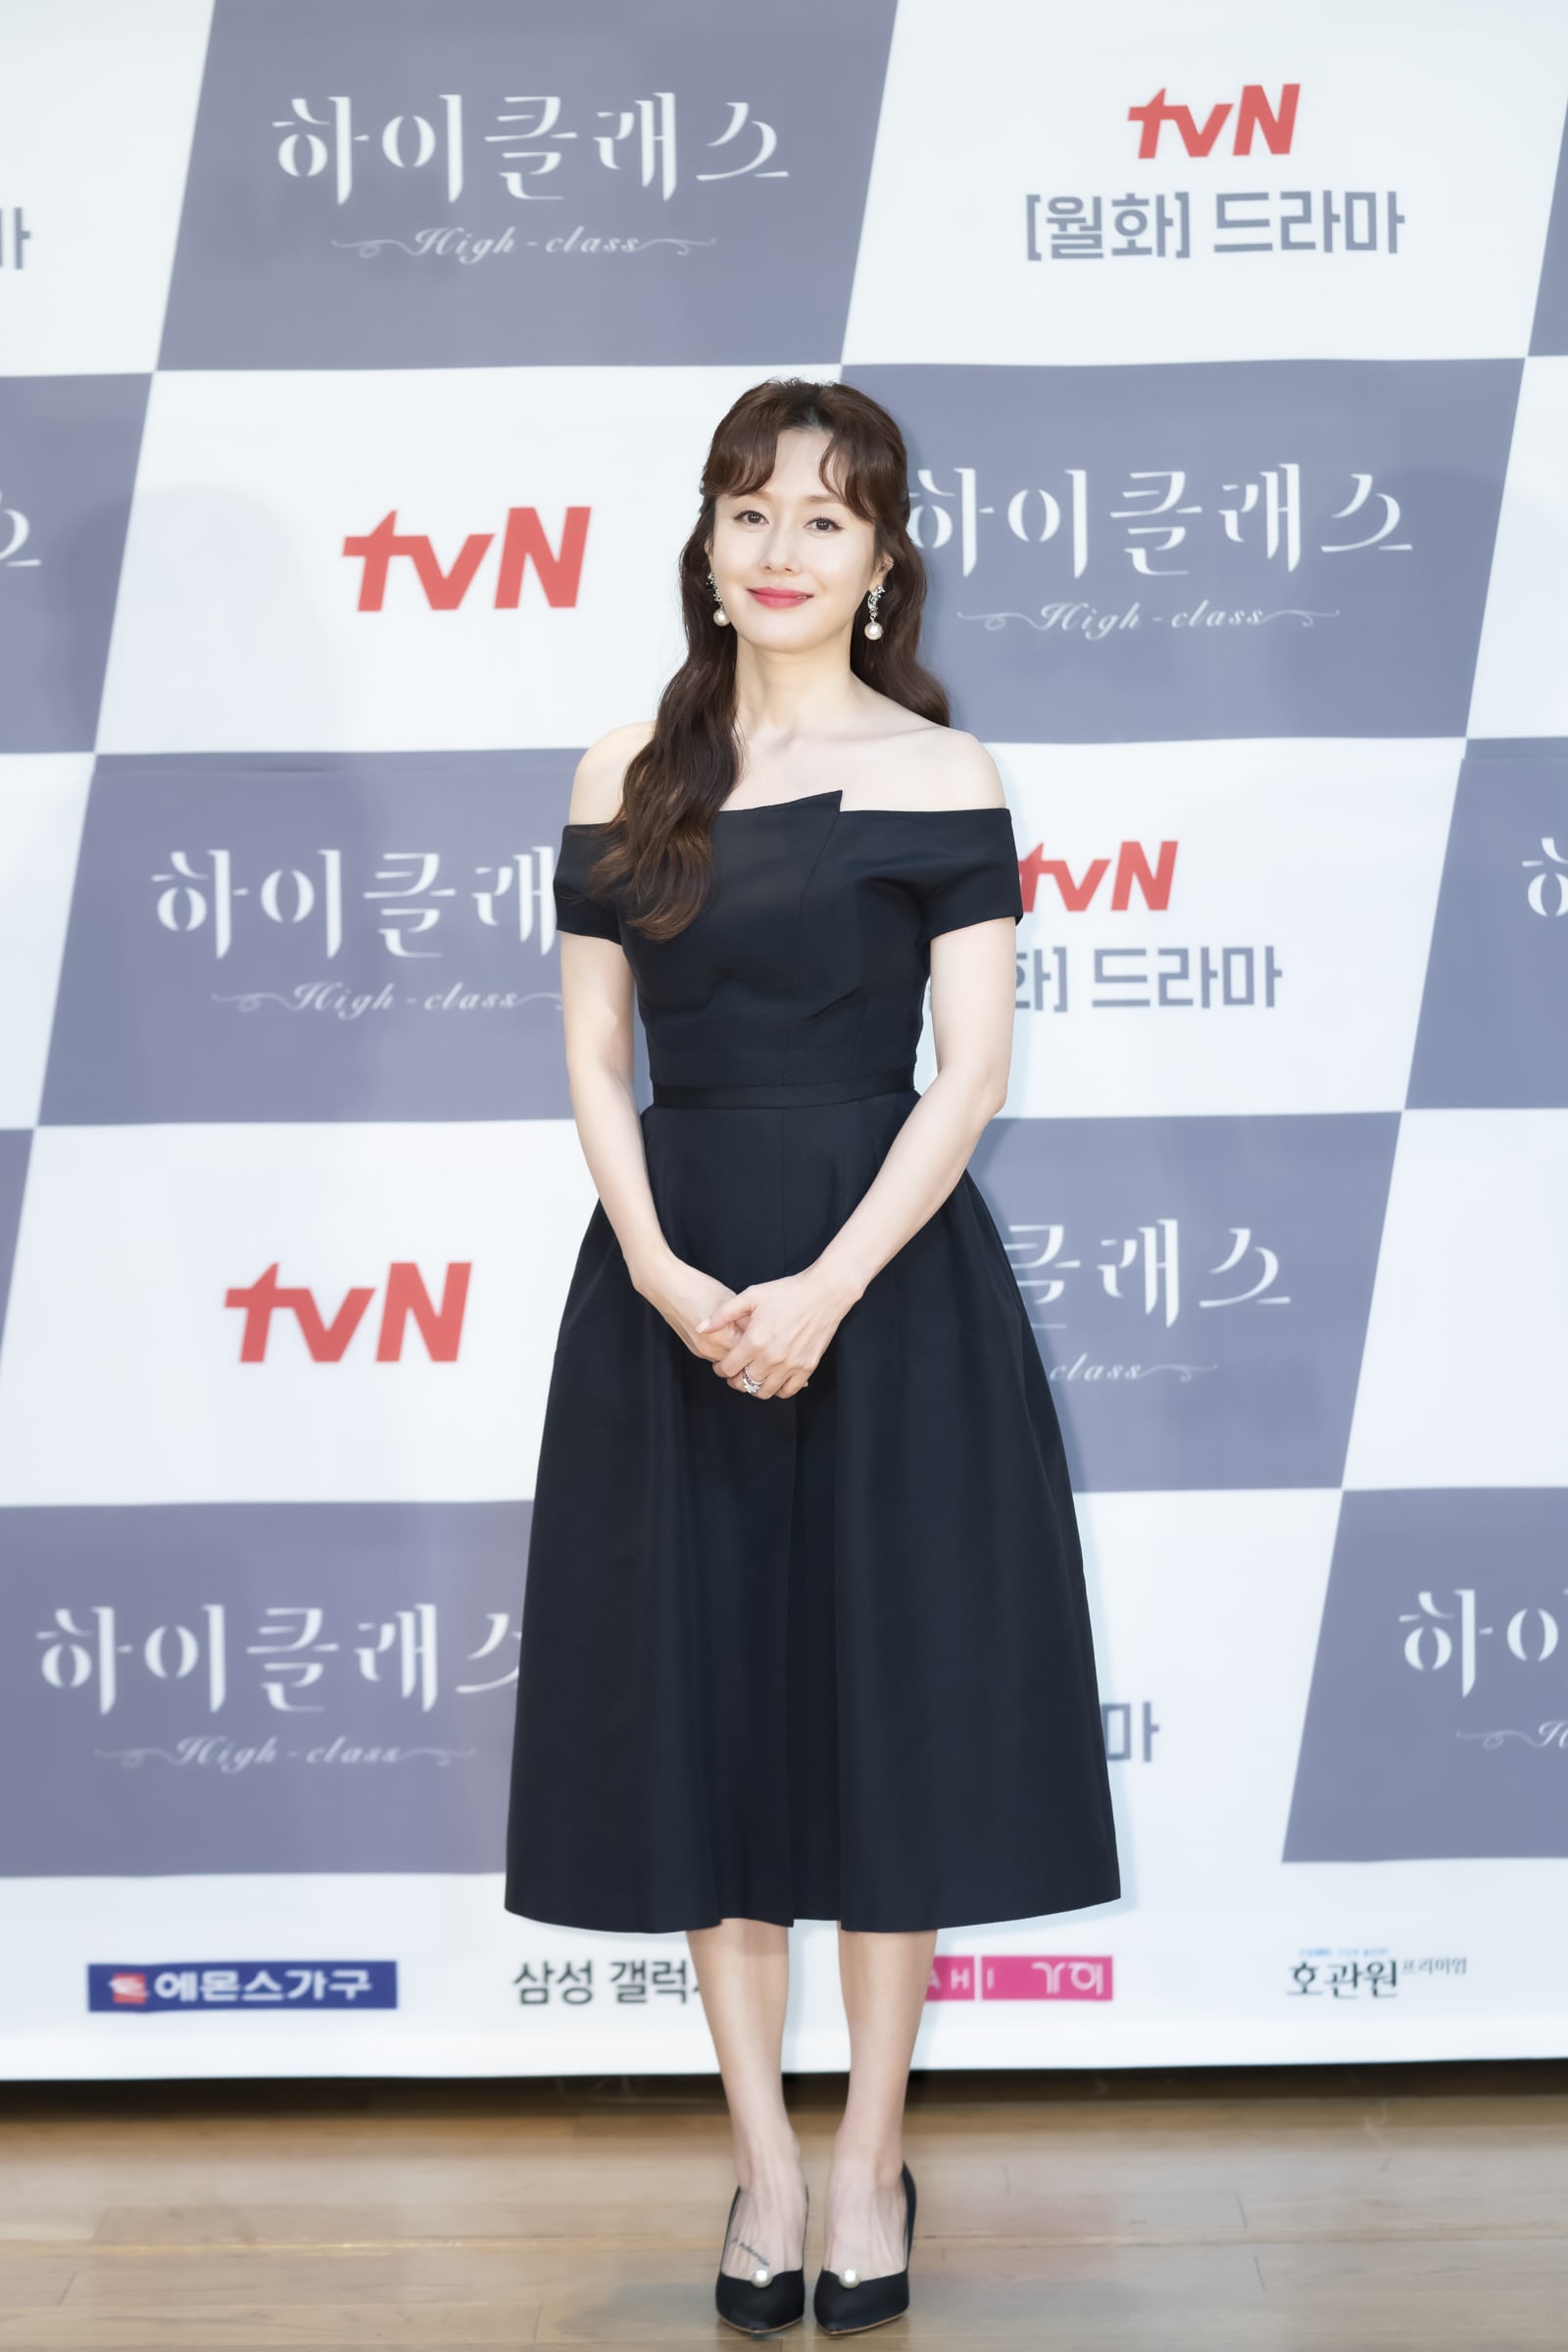 'Chị đại' của màn ảnh Hàn - Kim Ji Soo cũng từng nhận 'cơn mưa lời khen' khi diện chiếc đầm đen này. Chọn kiểu tóc uốn xoăn nhẹ nhàng, kết hợp cùng những phụ kiện đơn giản, người đẹp U50 khoe trọn vẻ ngoài thanh lịch và trẻ trung đáng ngưỡng mộ.